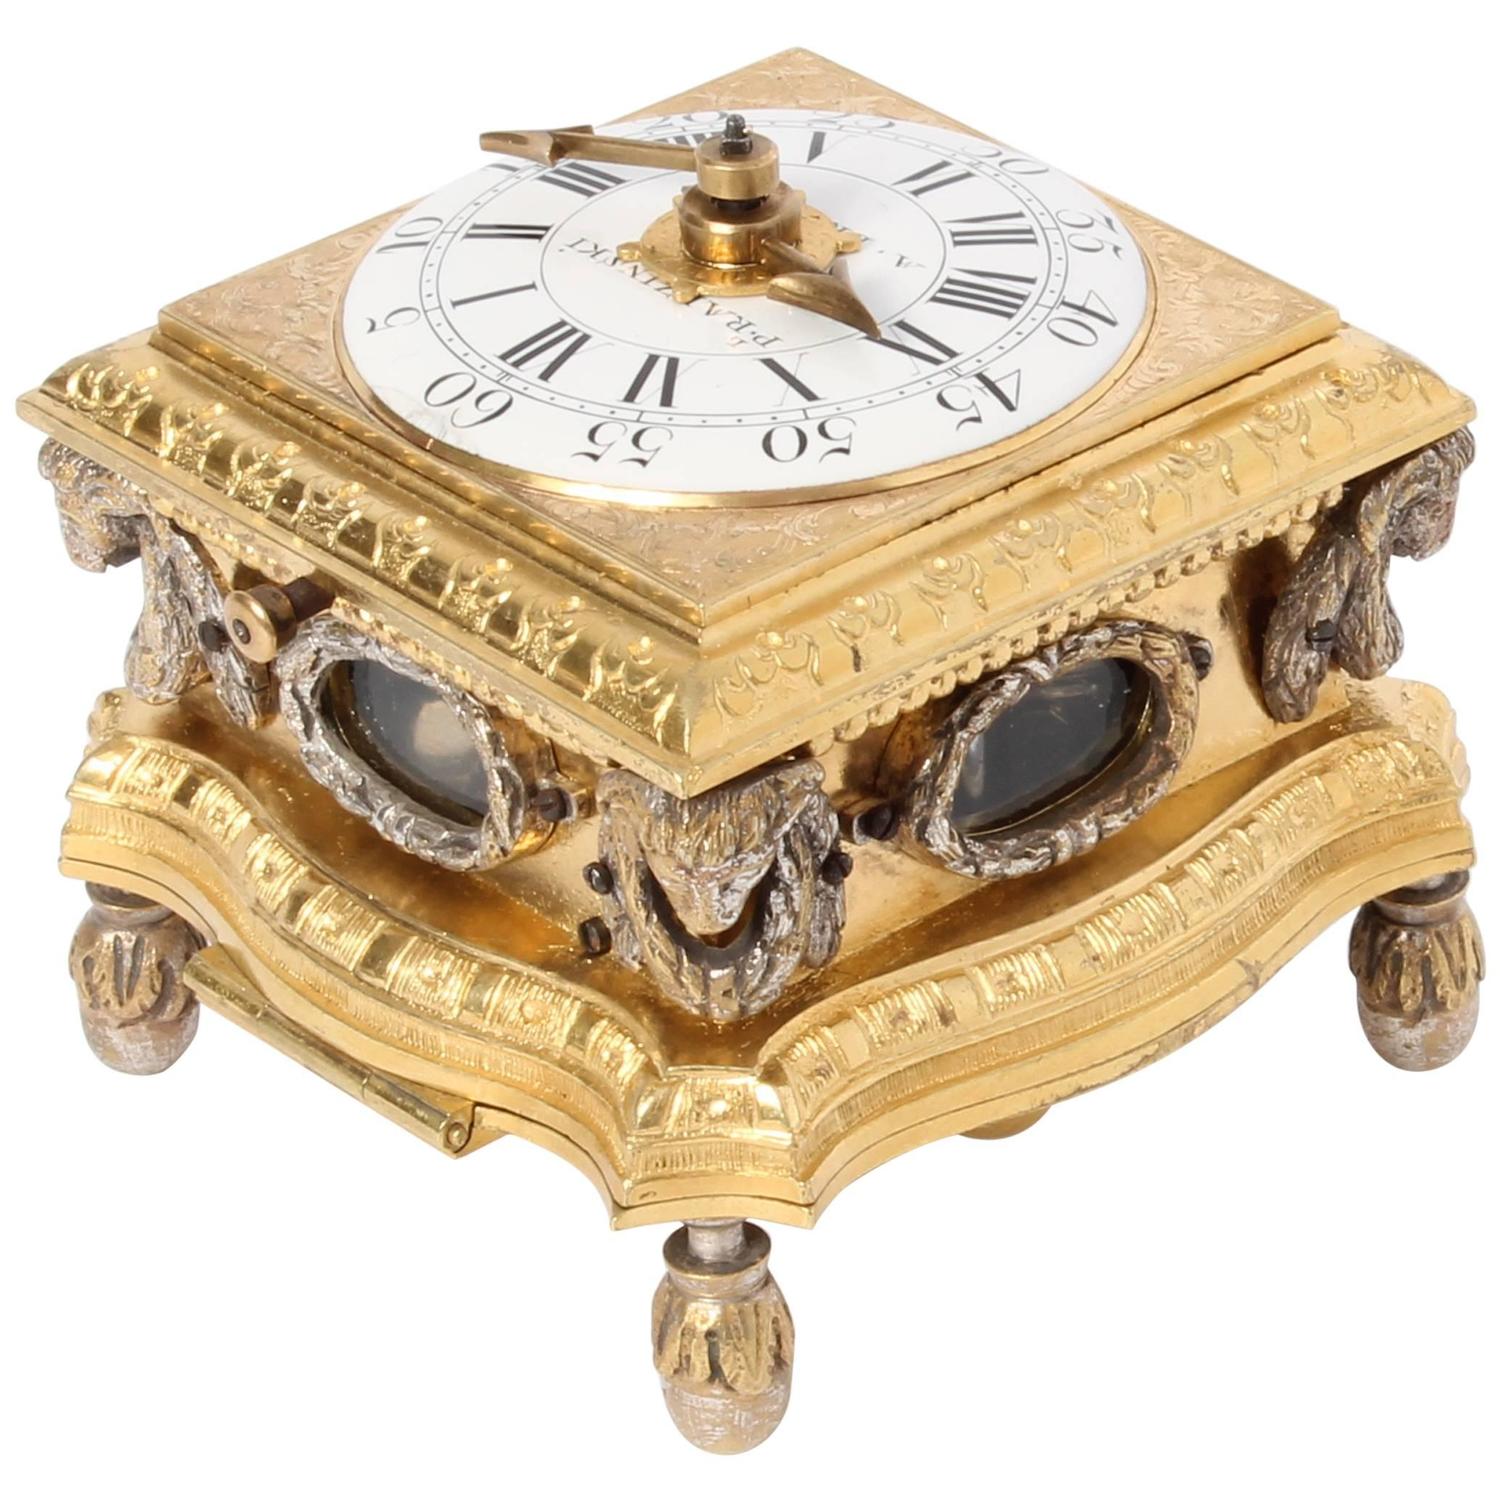 Small Decorative Desk Clocks Decorative Ornamental Table Clock